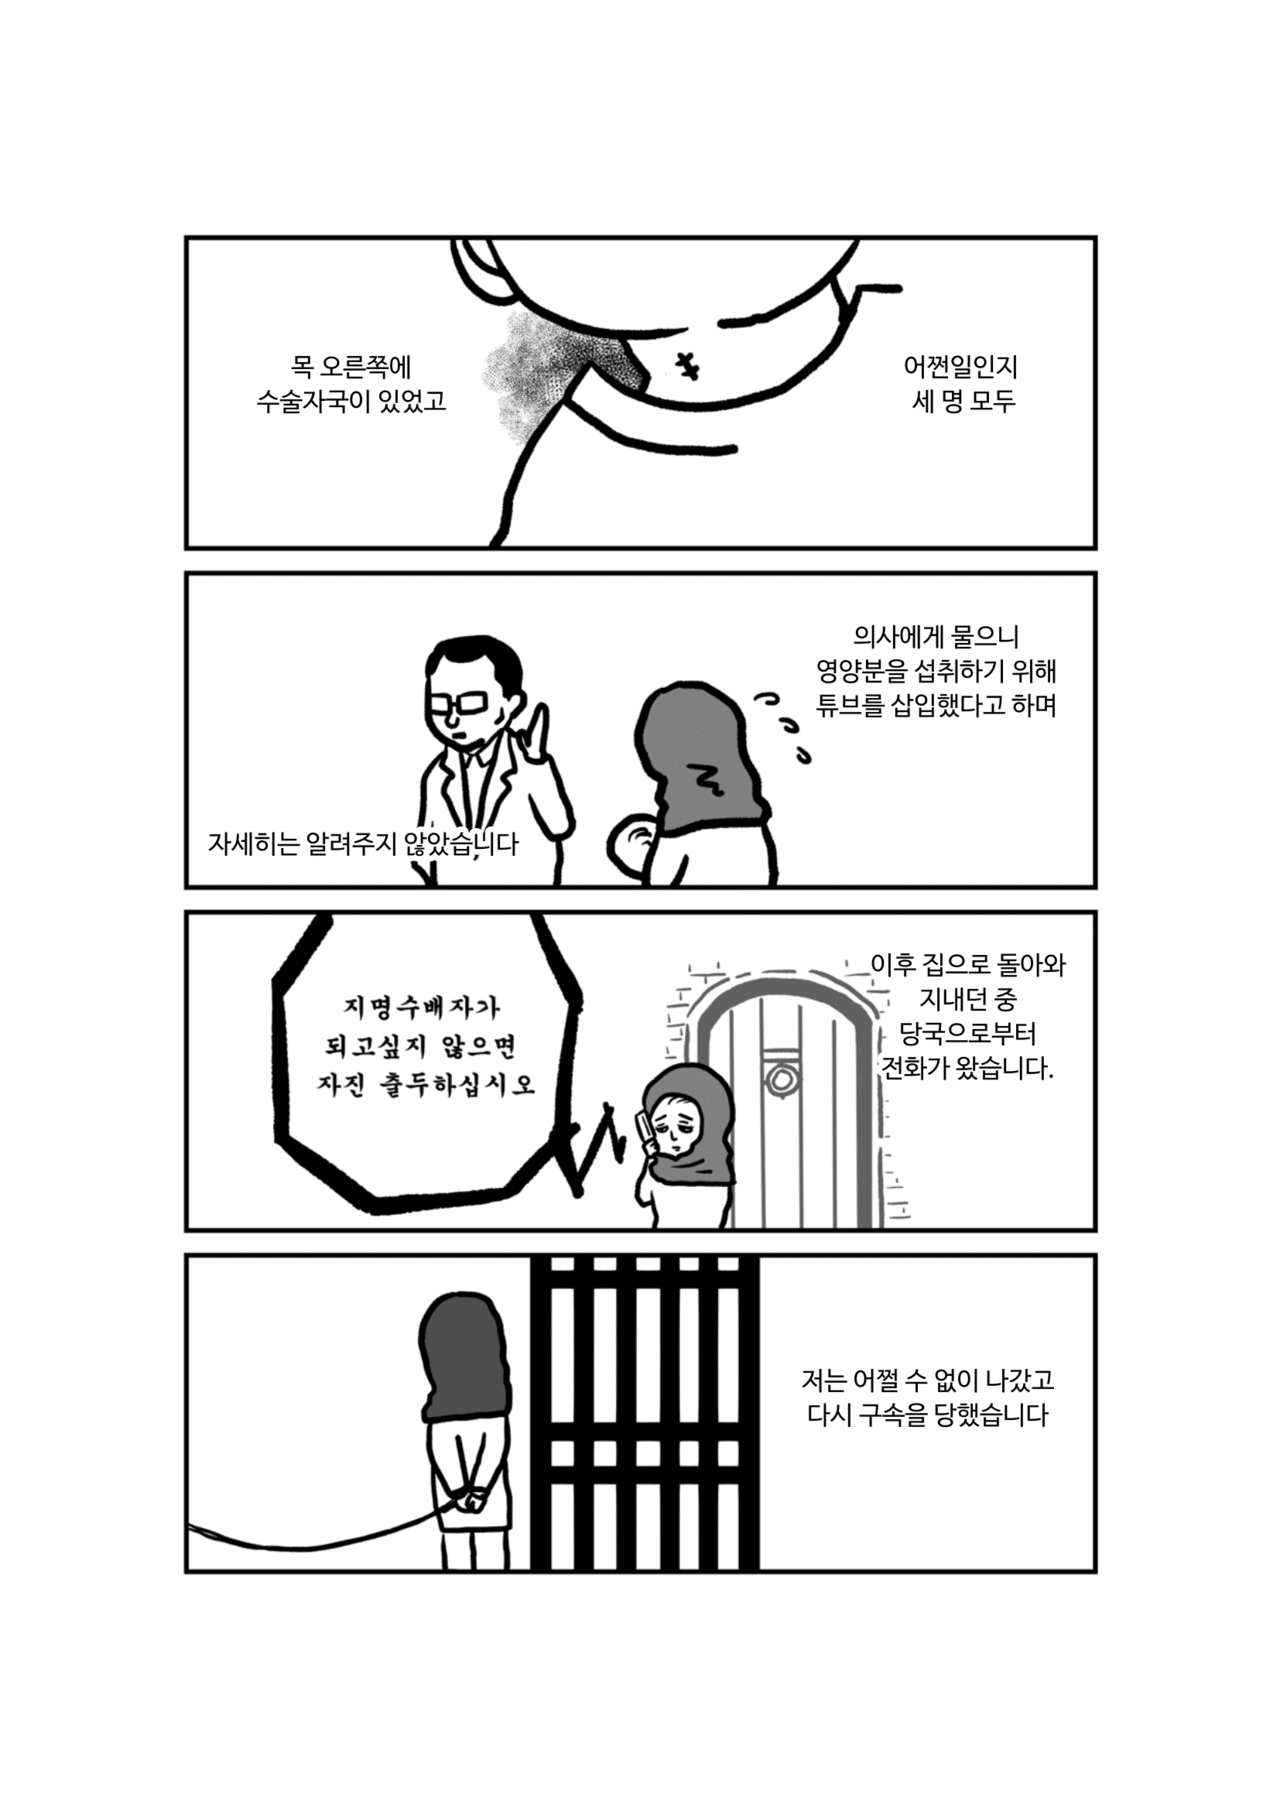 私の身に起きたこと韓国-04